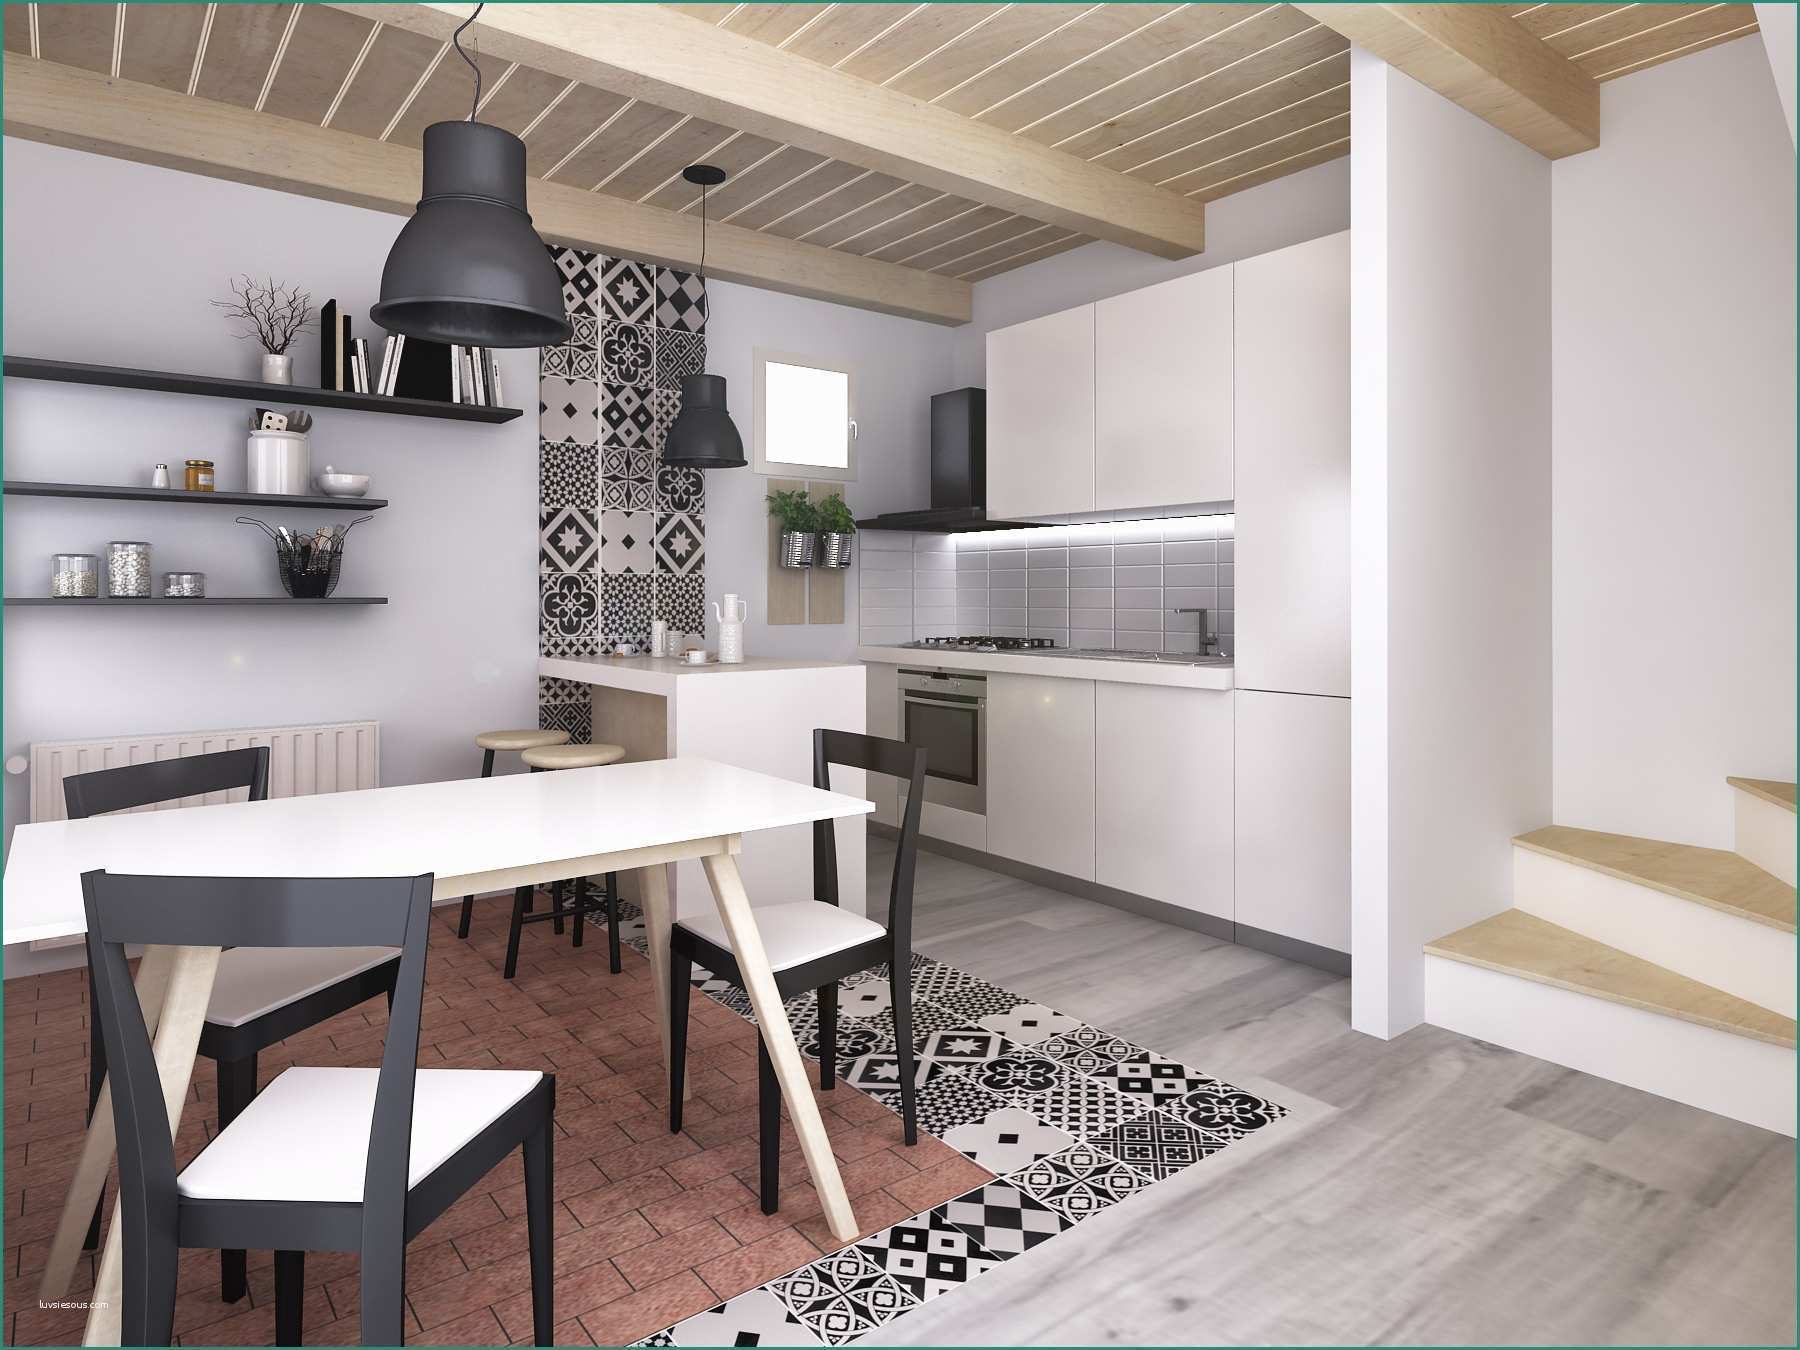 Dimensioni Cucina Con isola E Pavimenti Cucine Moderne Cucina Bianca Moderna In Laminato Lucido